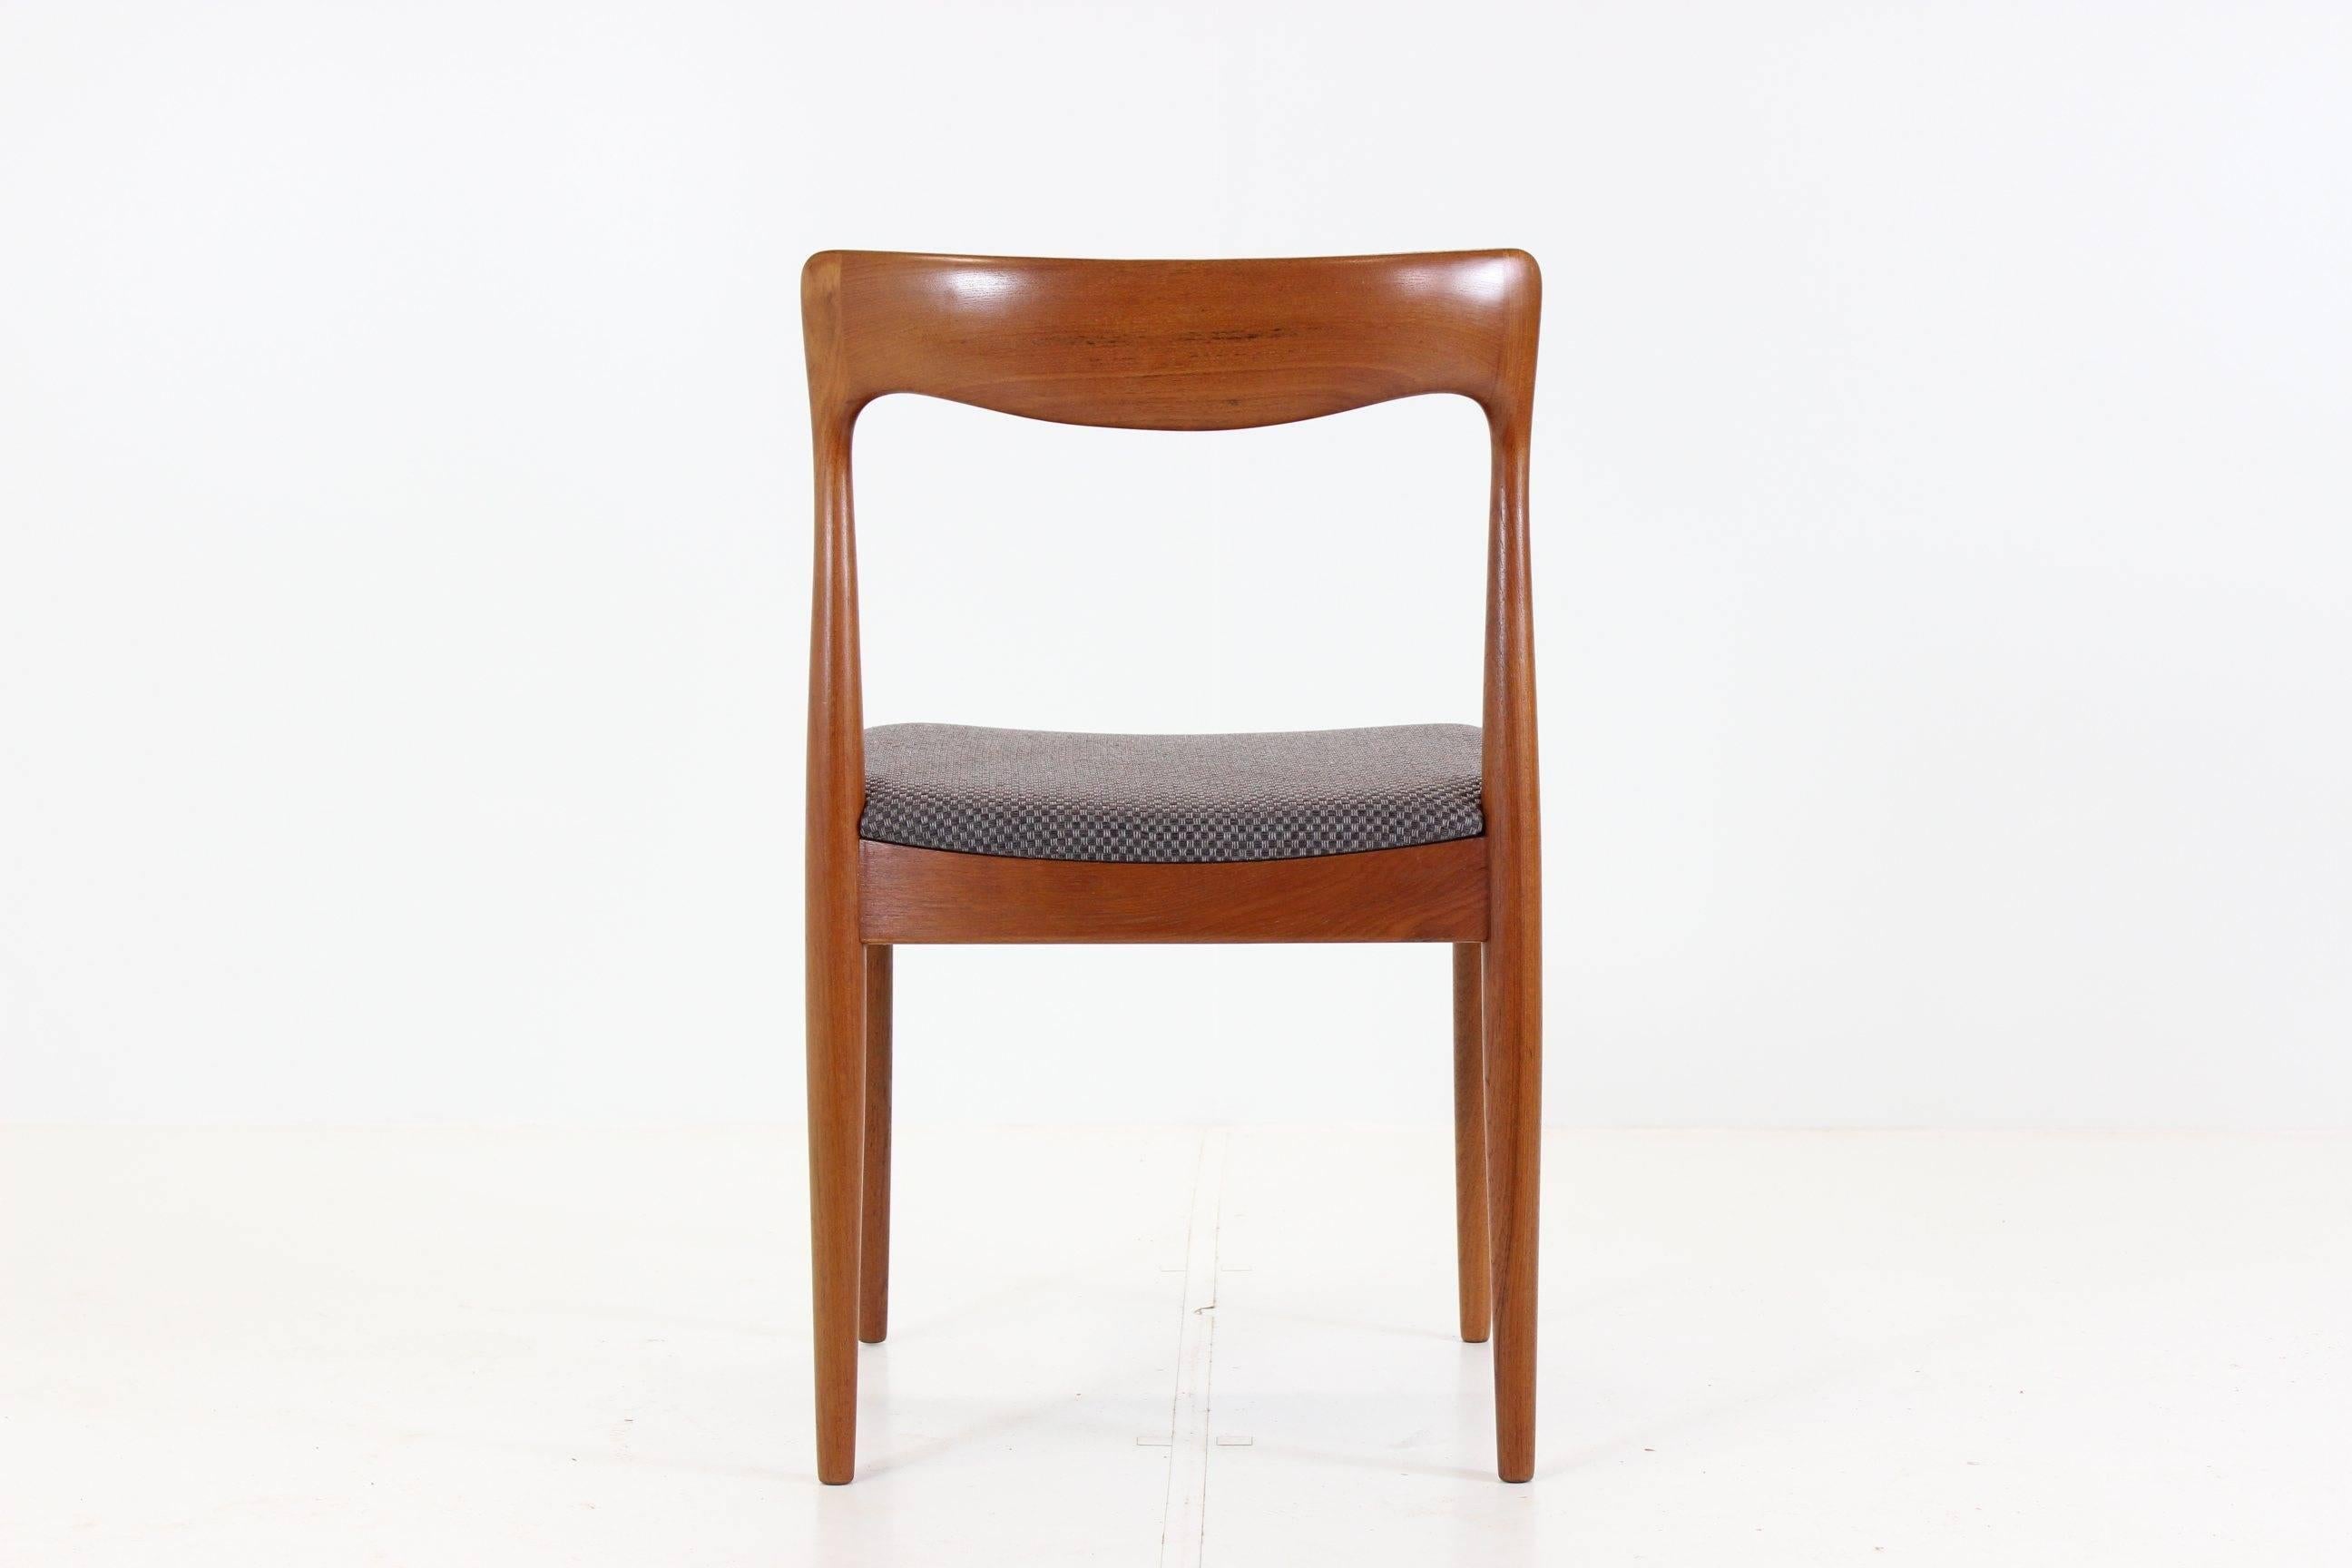 Set of Four Teak Dining Chair by Arne Vodder for Vamo Møbelfabrik 1